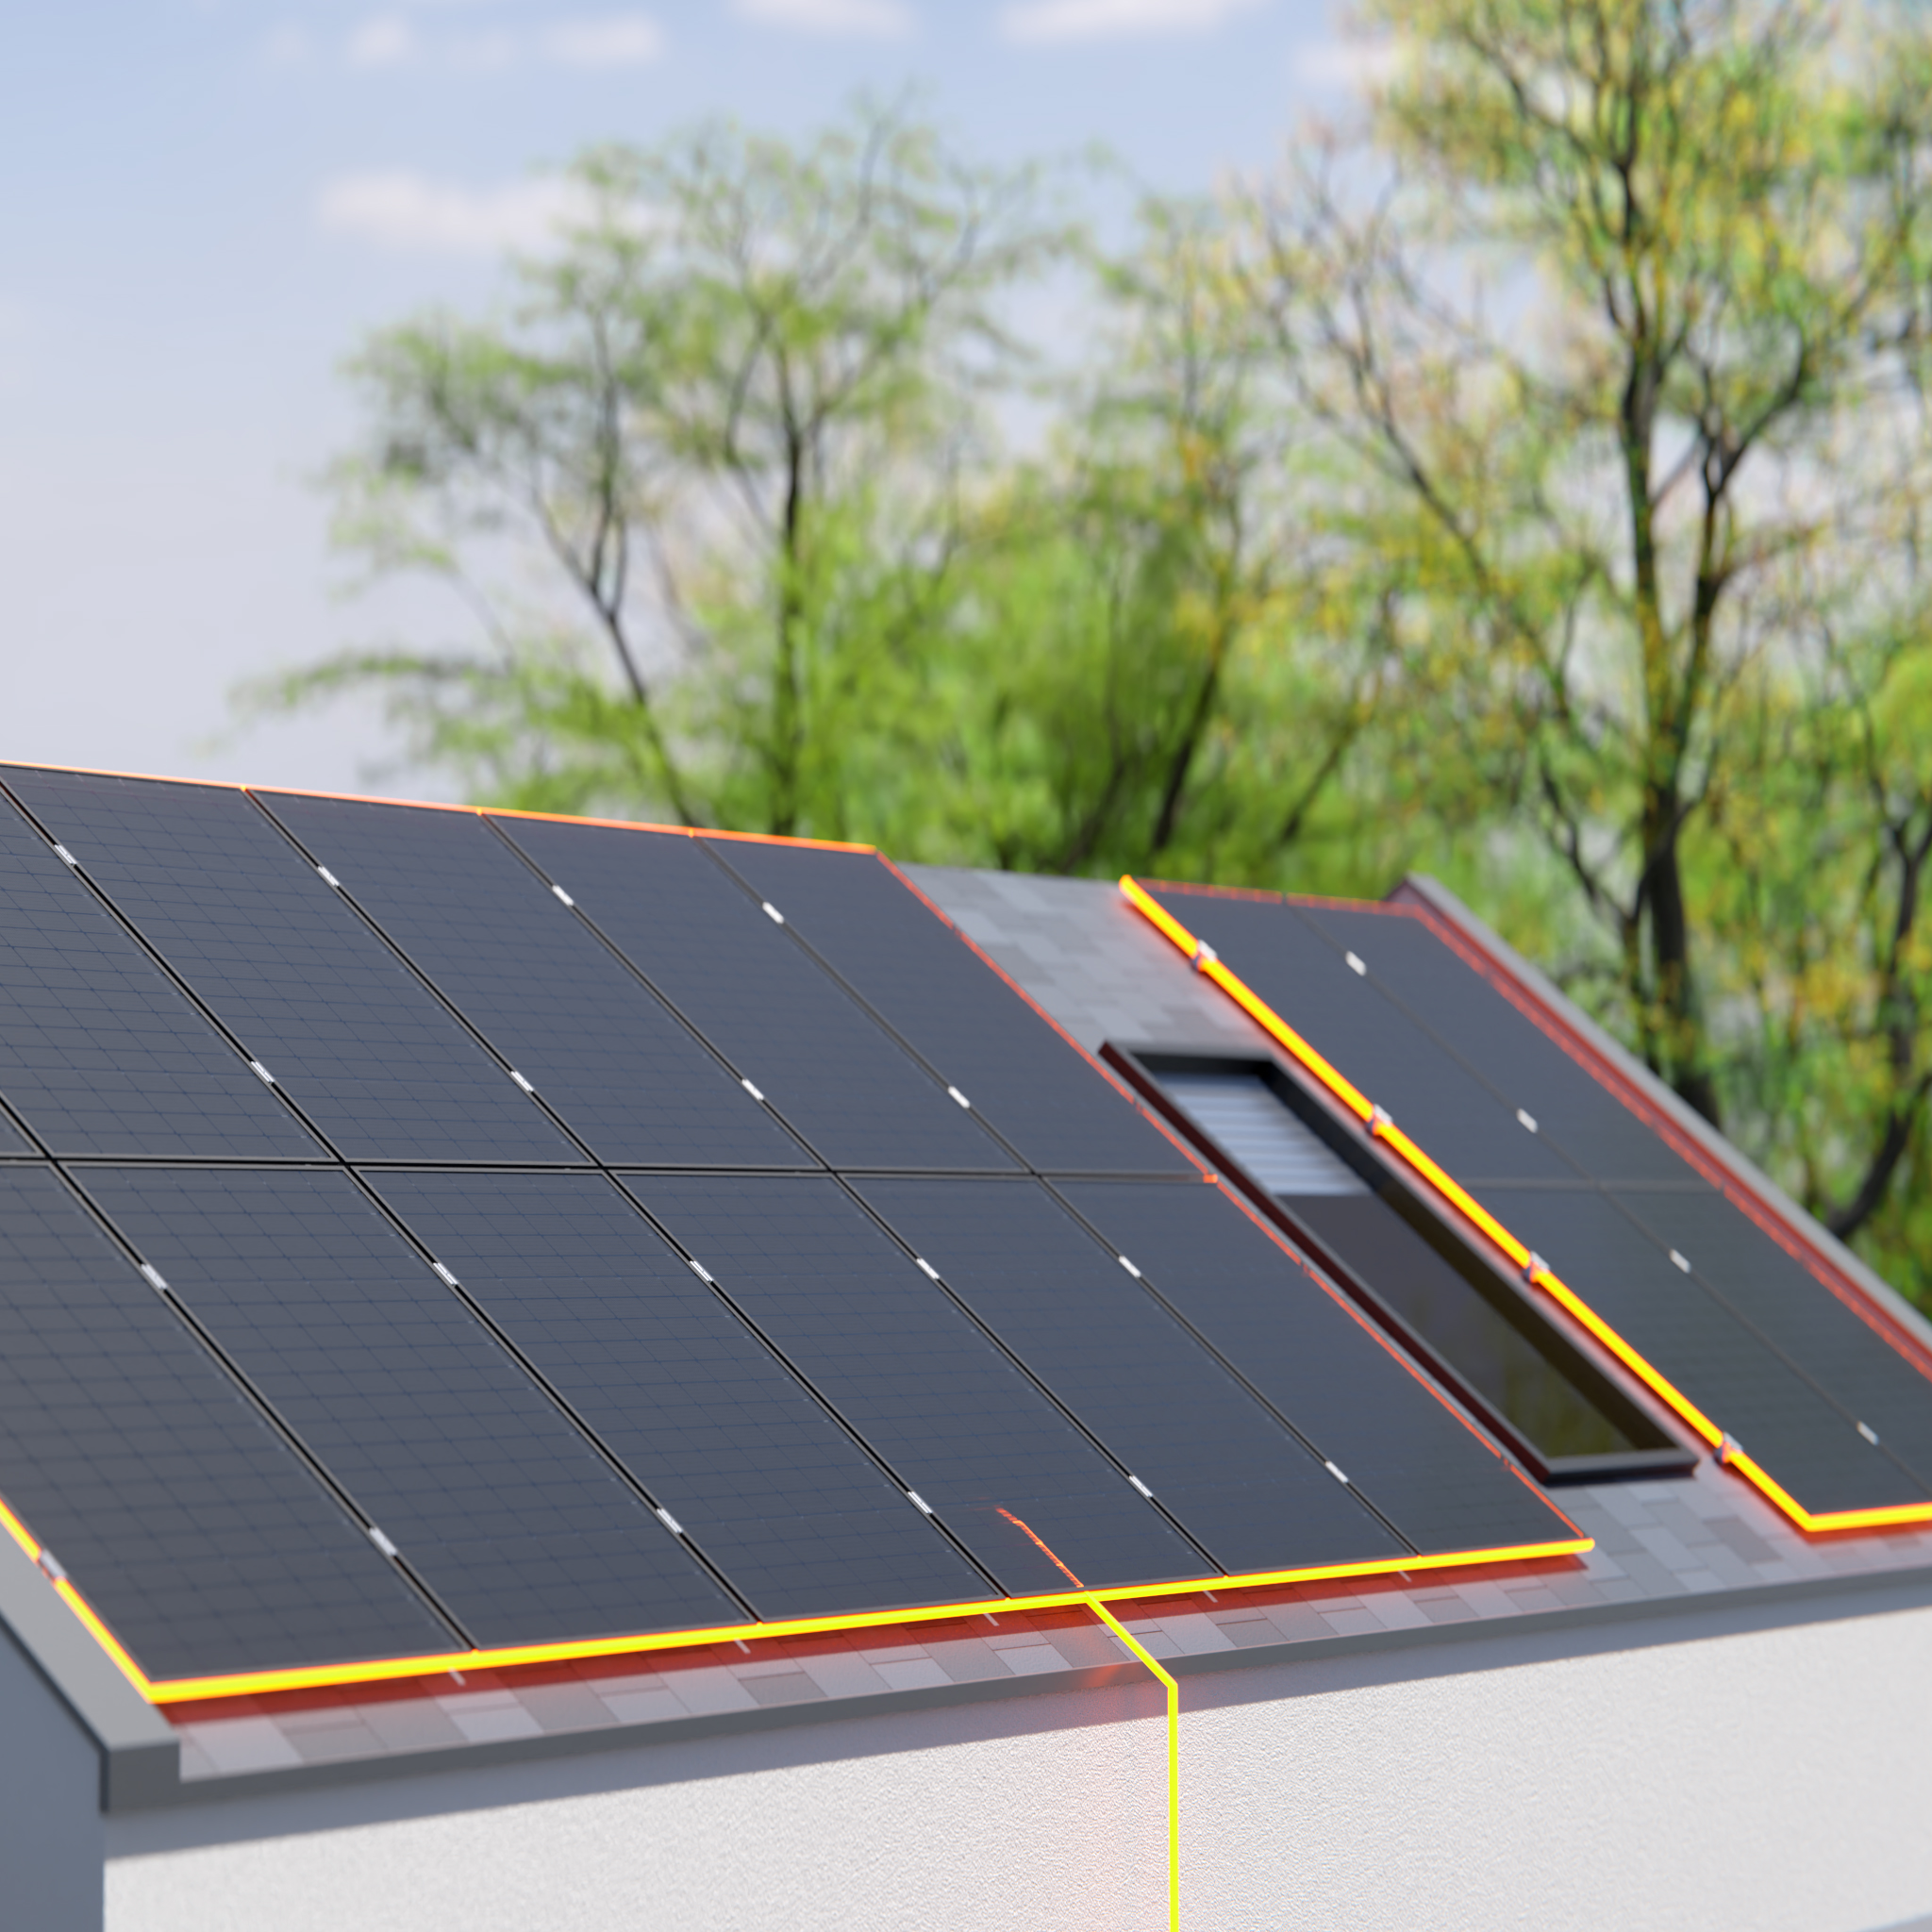 AMPERE.SolarPro PV-Module auf dem Dach als Teil des EKD Energiesystems, Frühlingsmotiv mit grünen Bäumen im Hintergrund